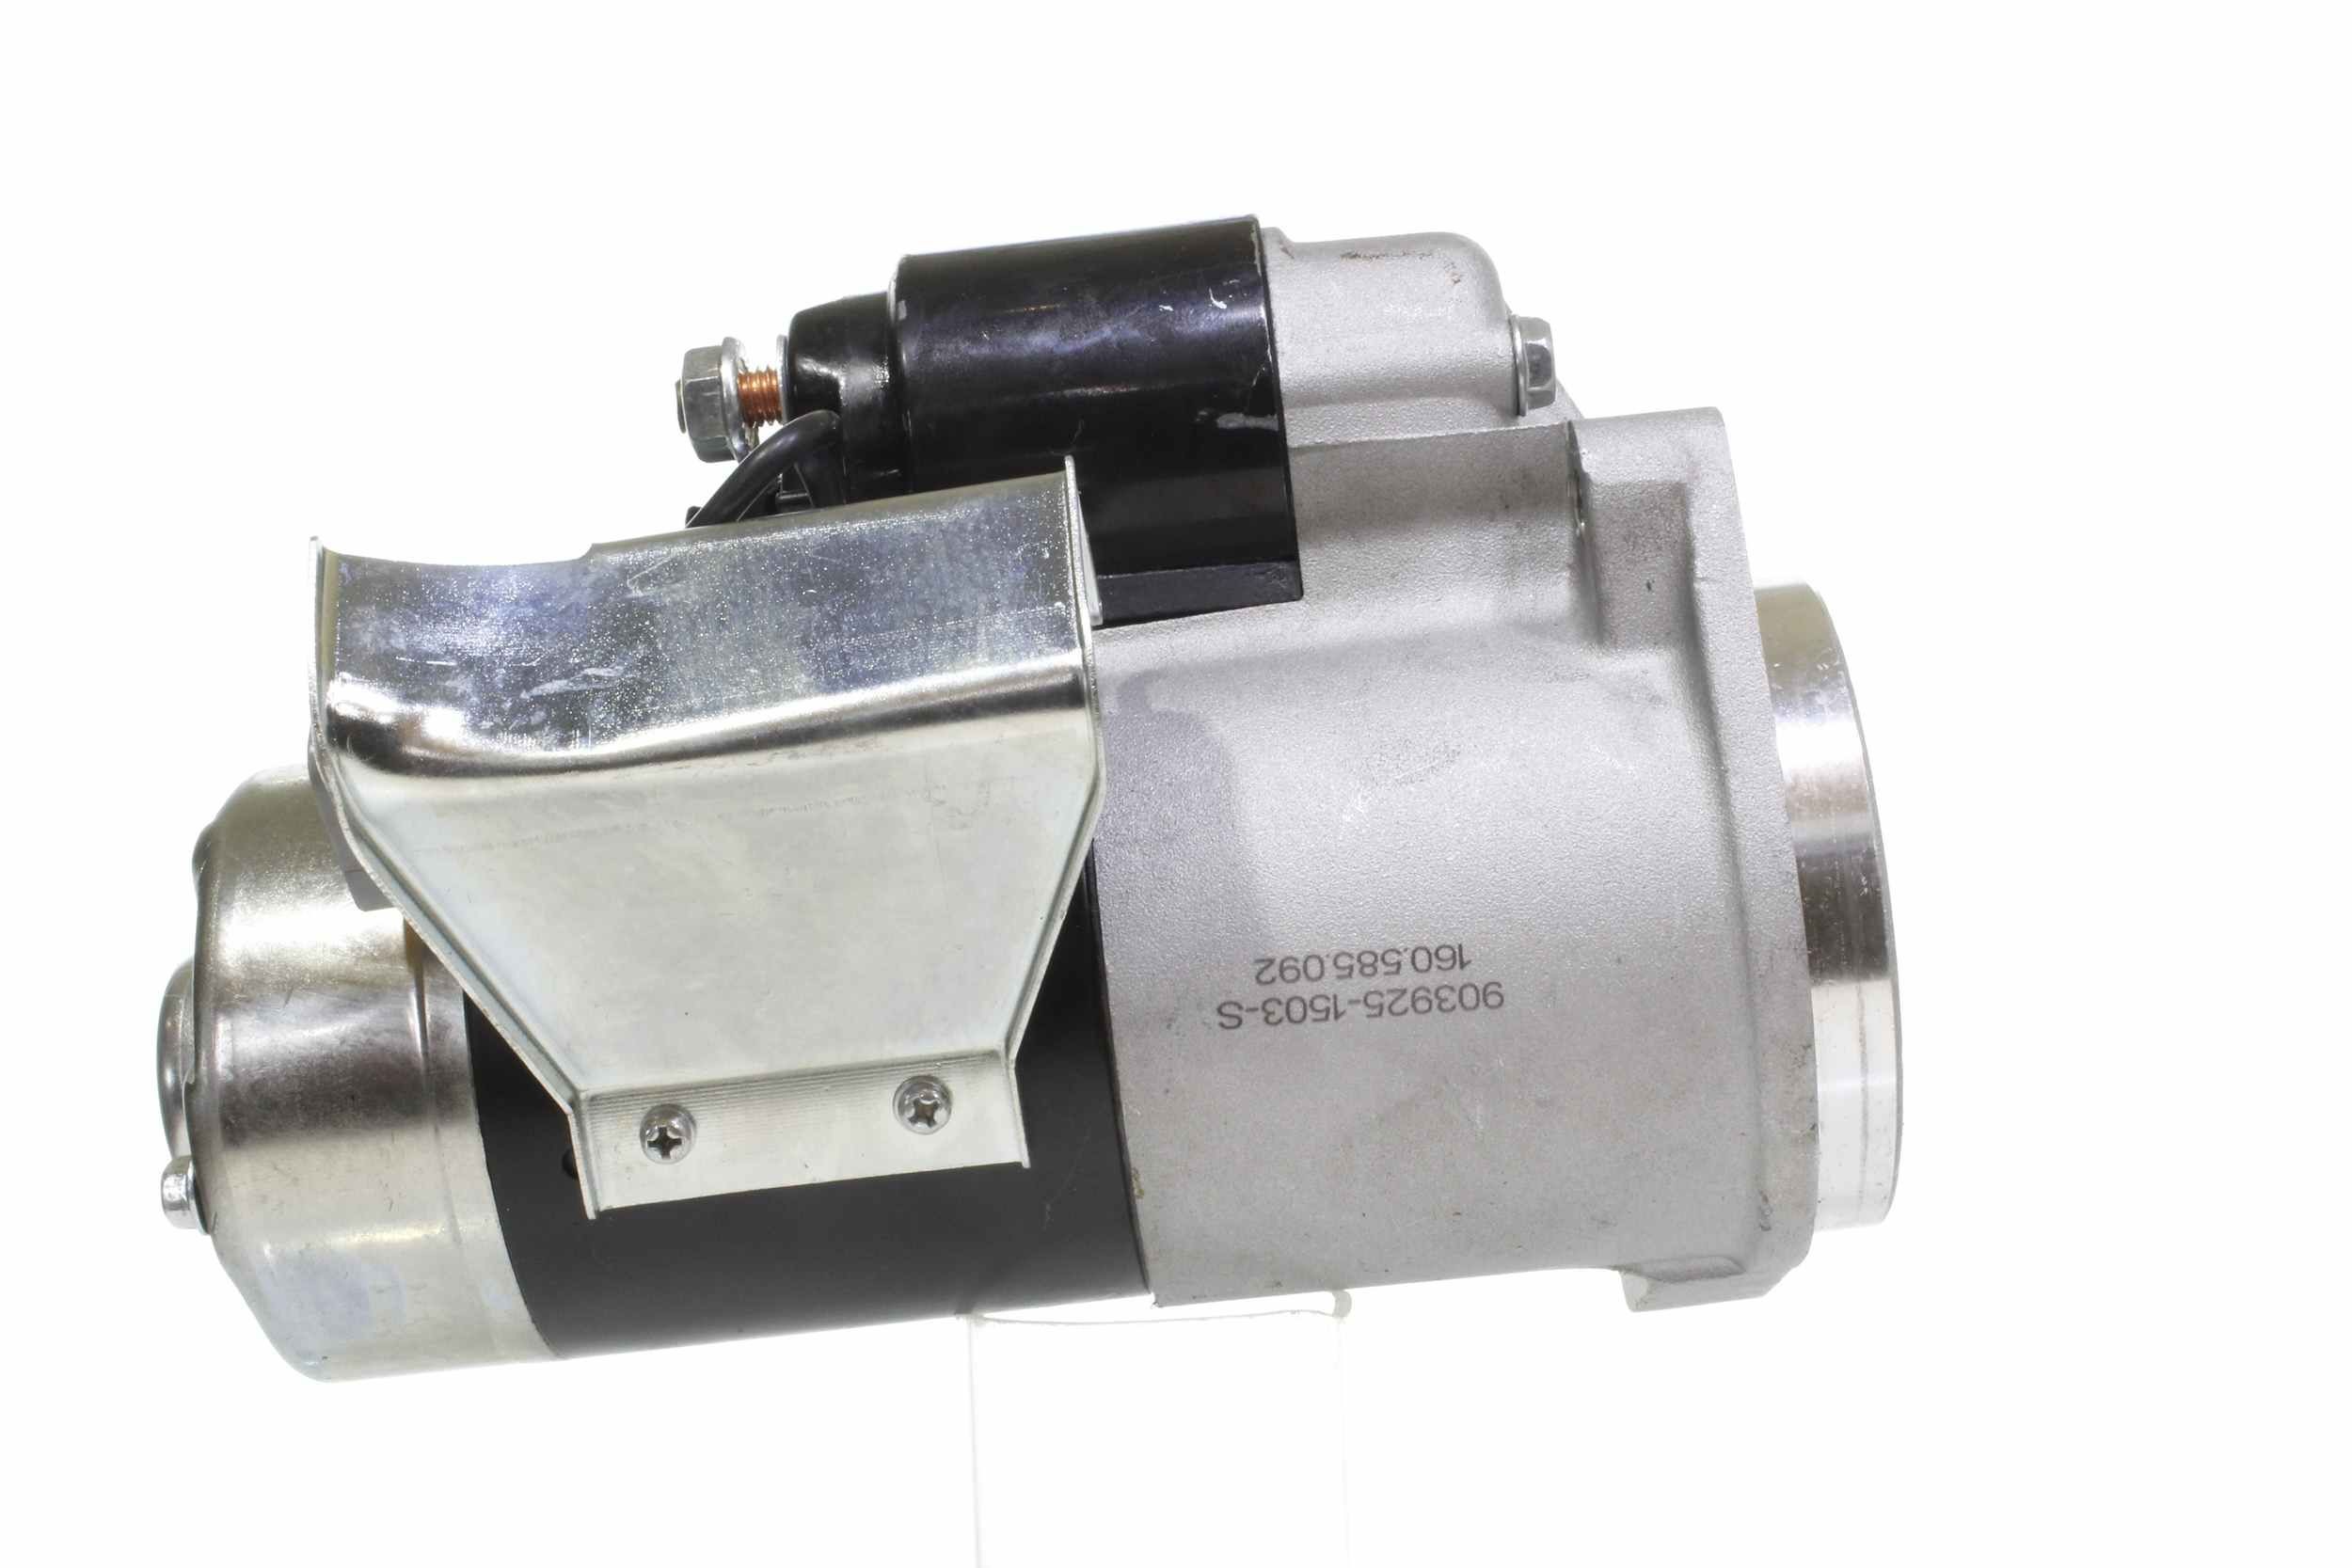 10440640 Starter motor 16817 ALANKO 12V, 1,4kW, Number of Teeth: 9, Ø 83 mm